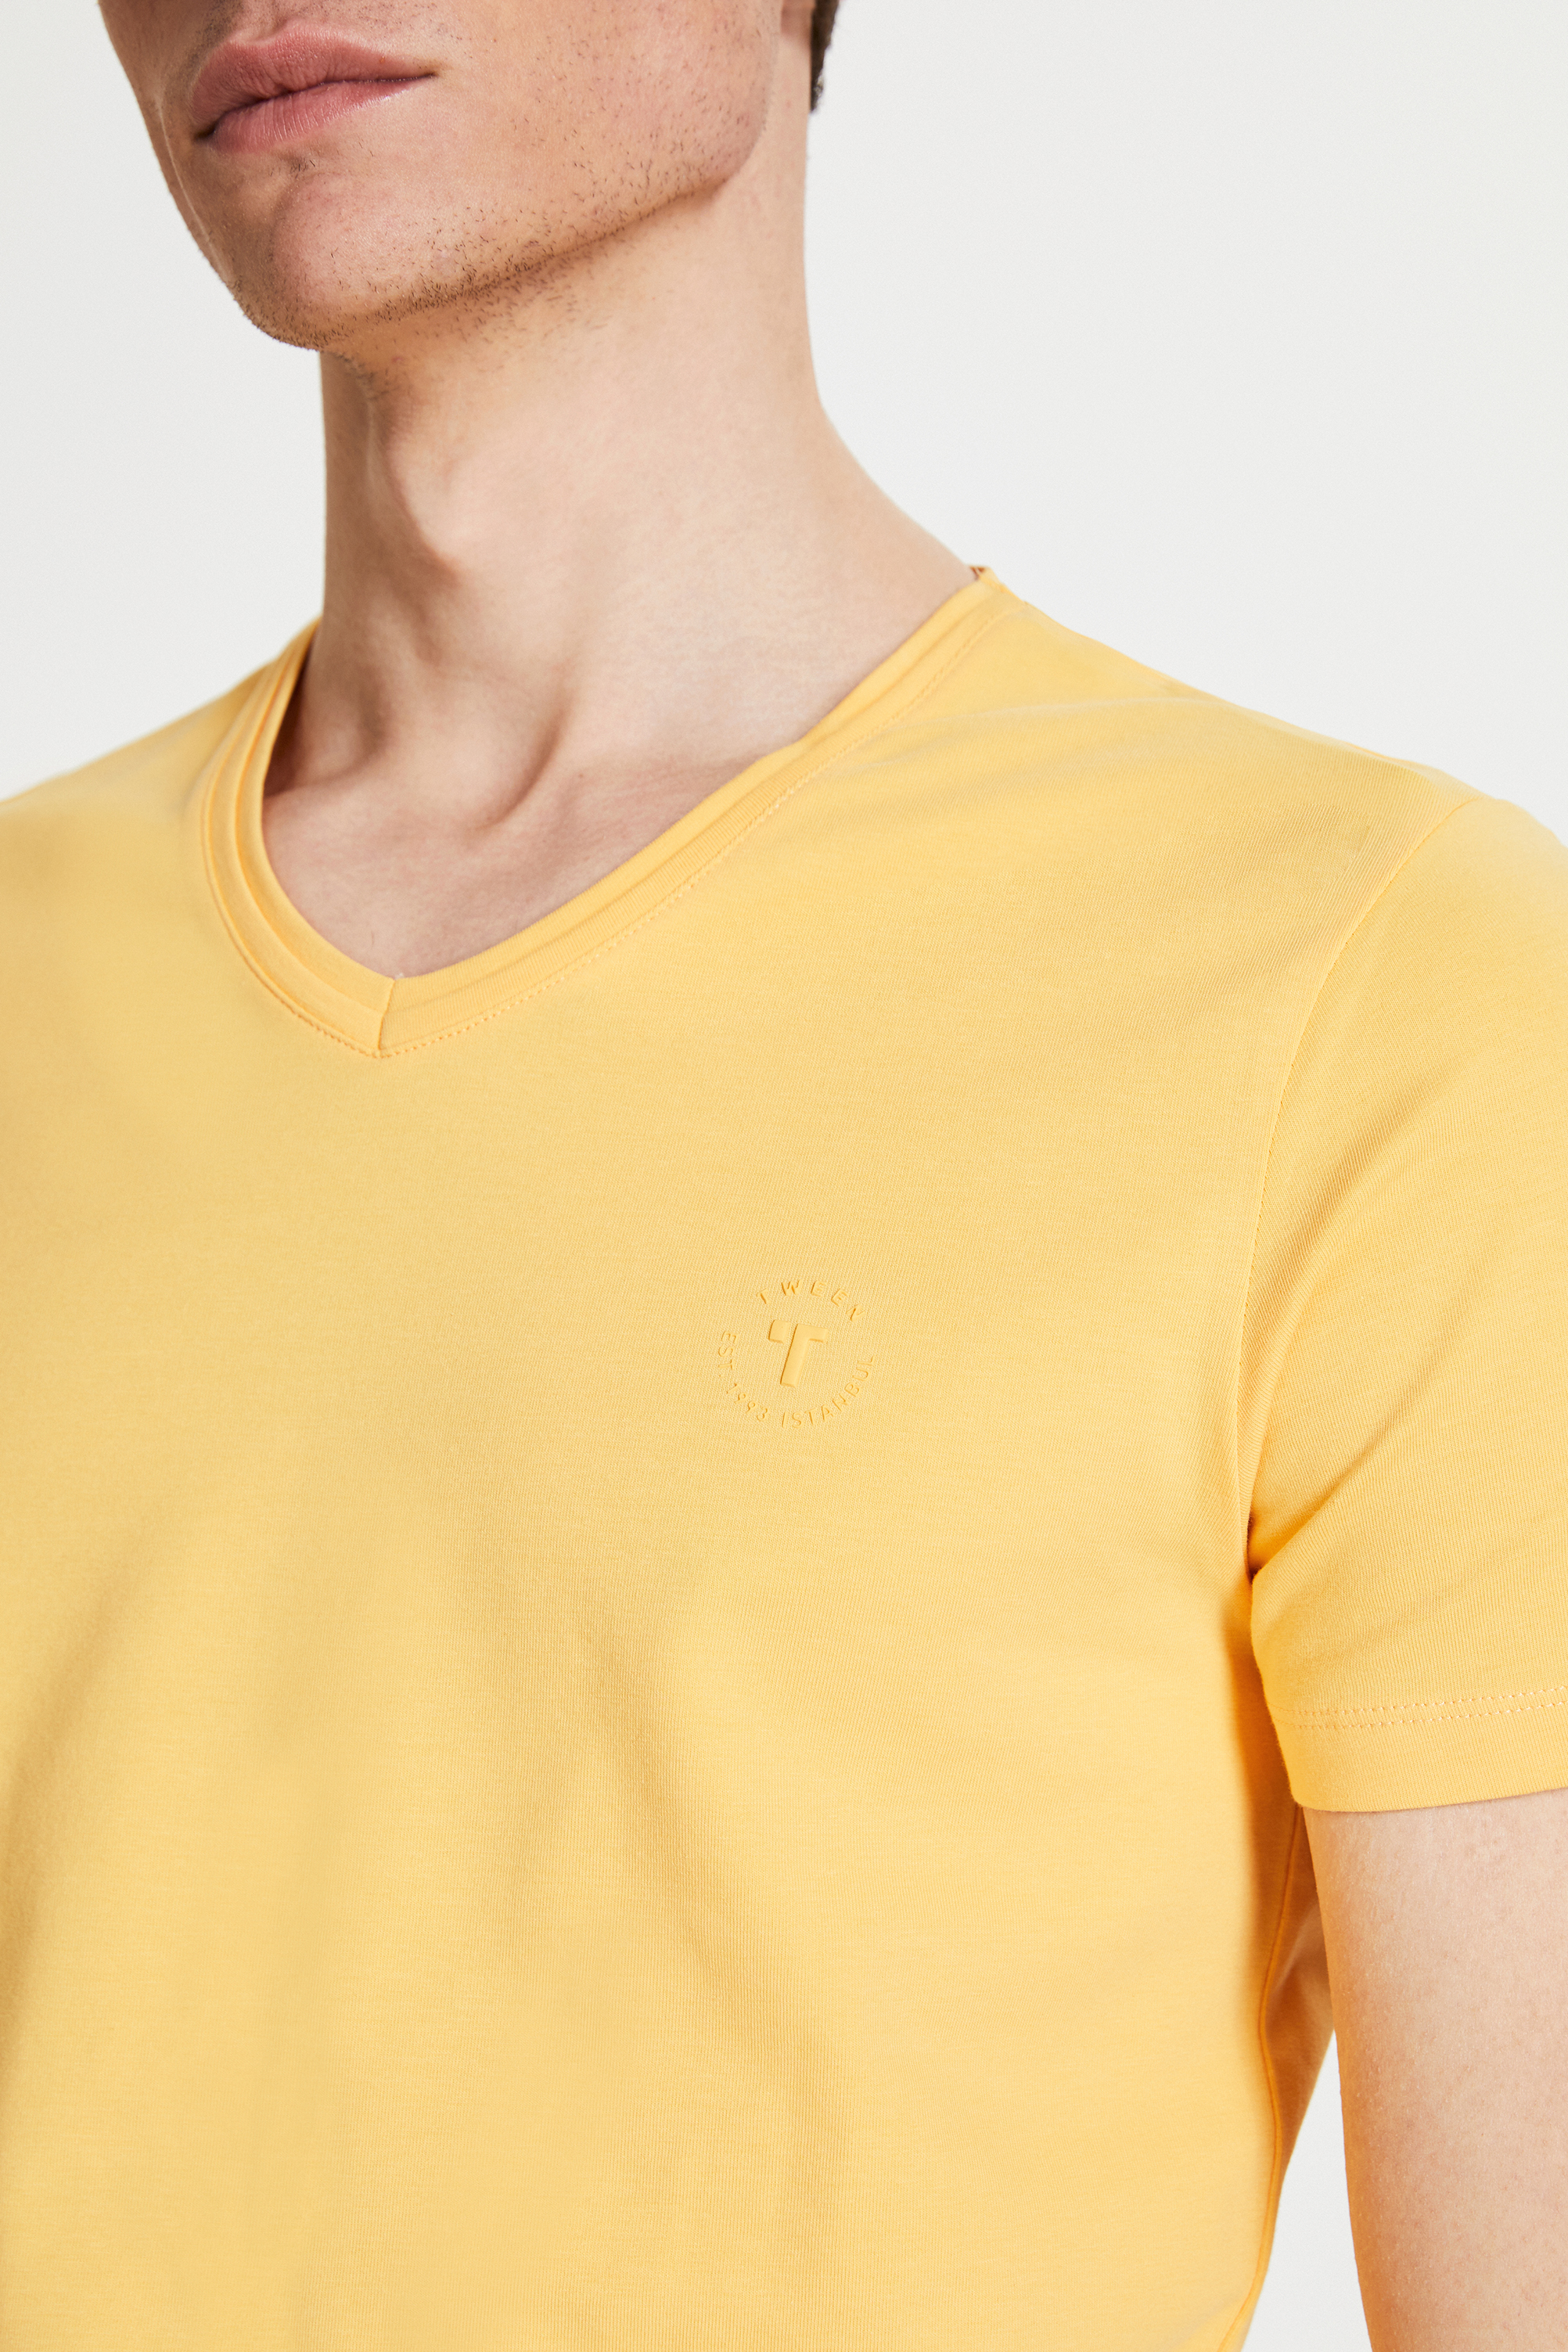 Damat Tween Tween Sarı Baskılı Baskılı T-Shirt. 3